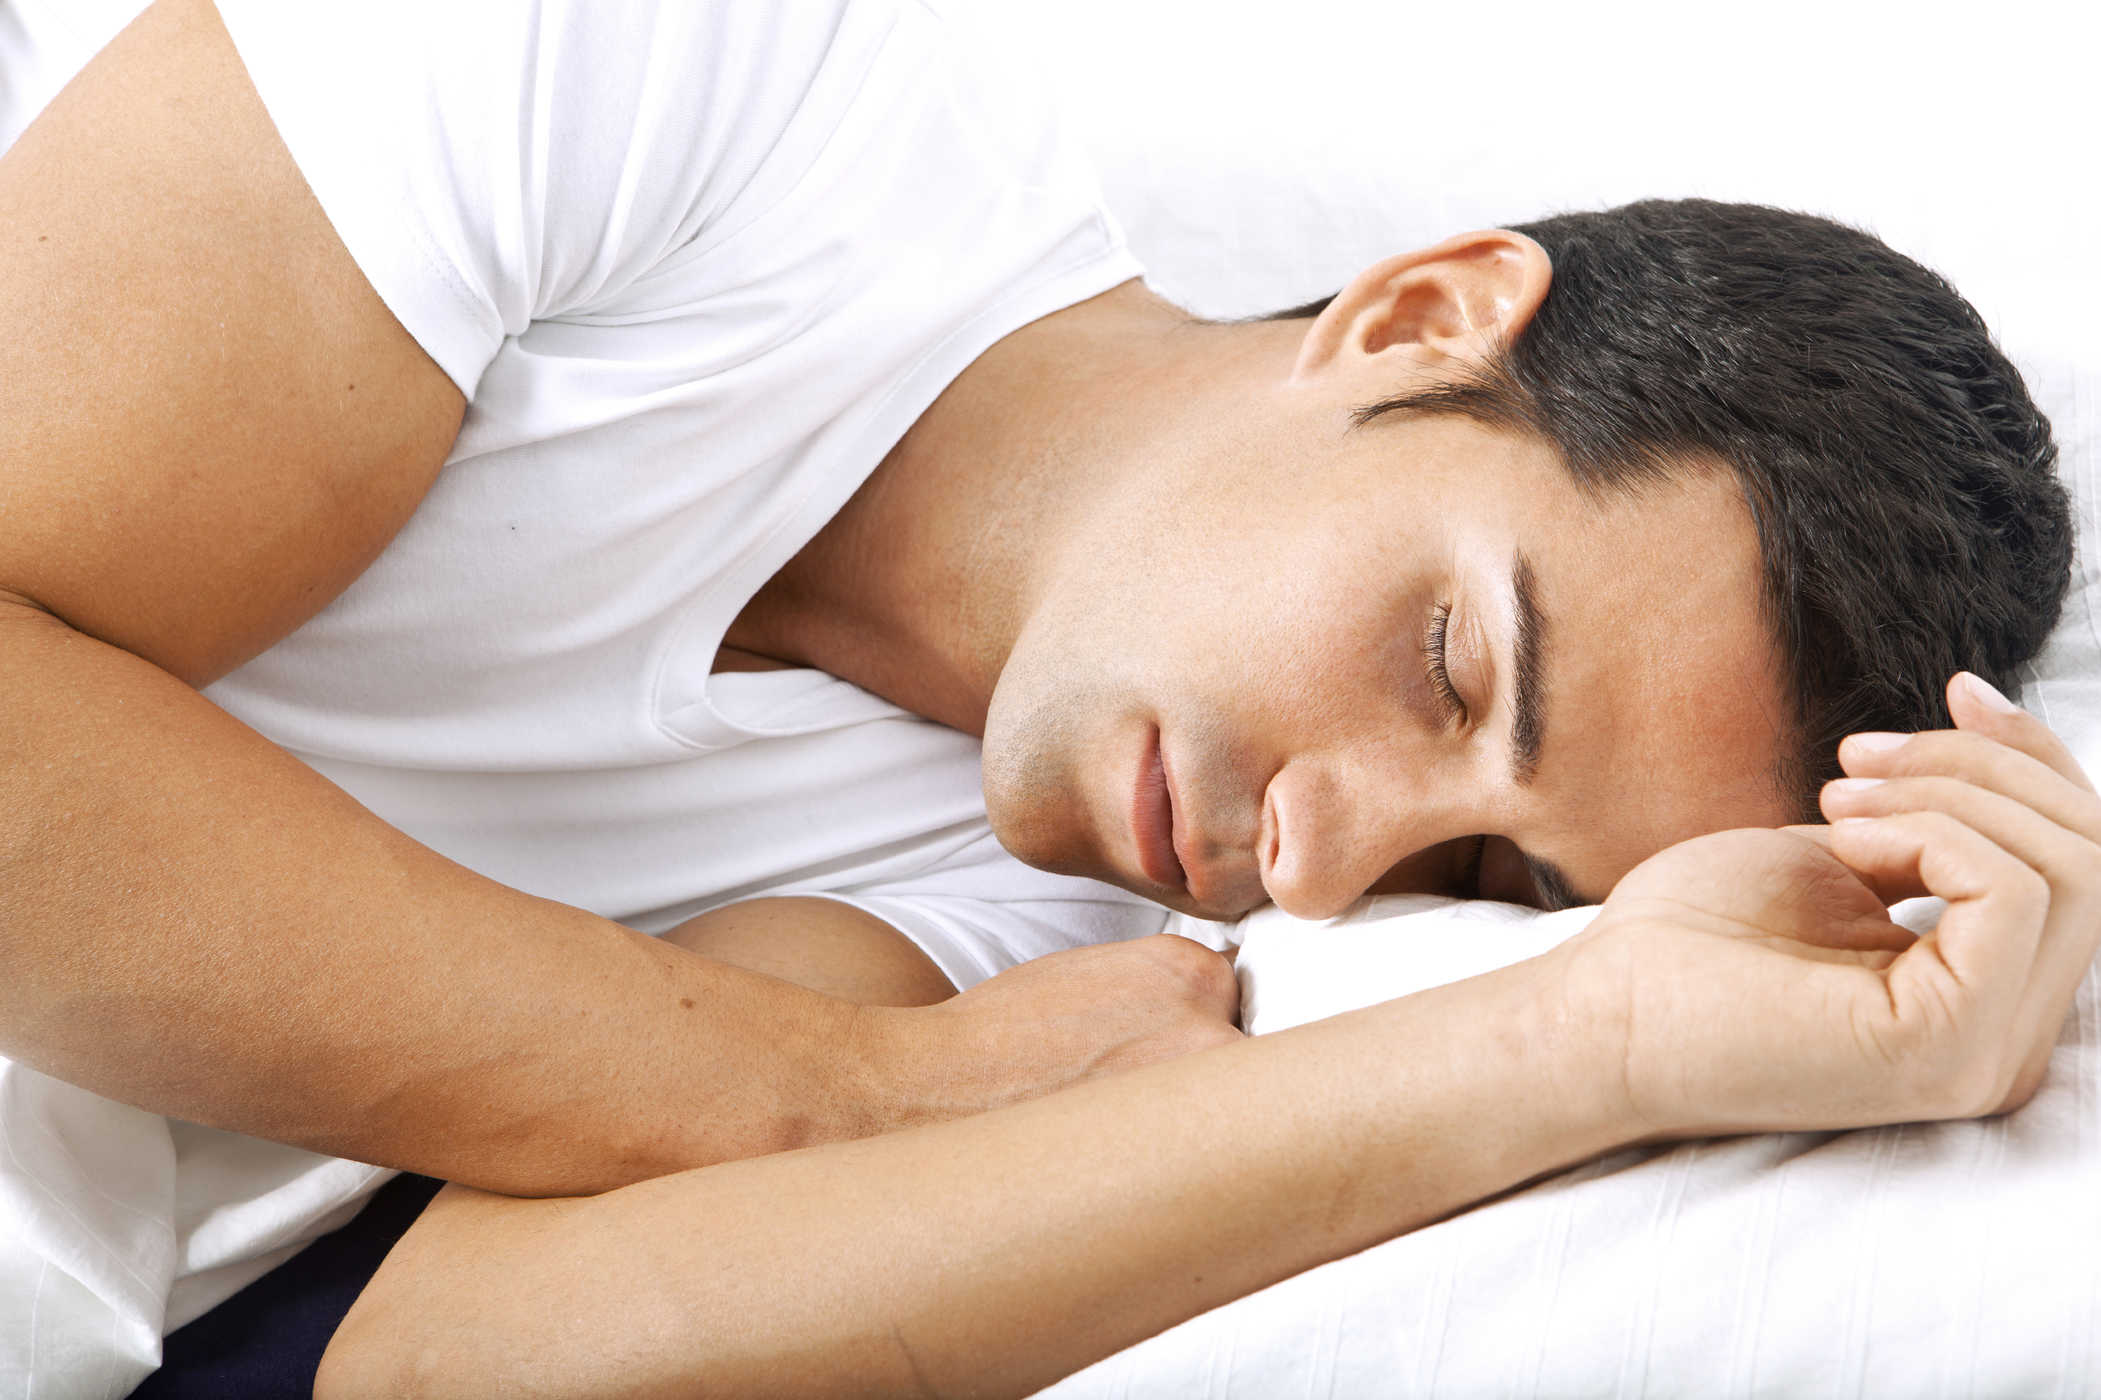 سونے کی خوبصورتی سنڈروم بہت دیر سے نیند ہے